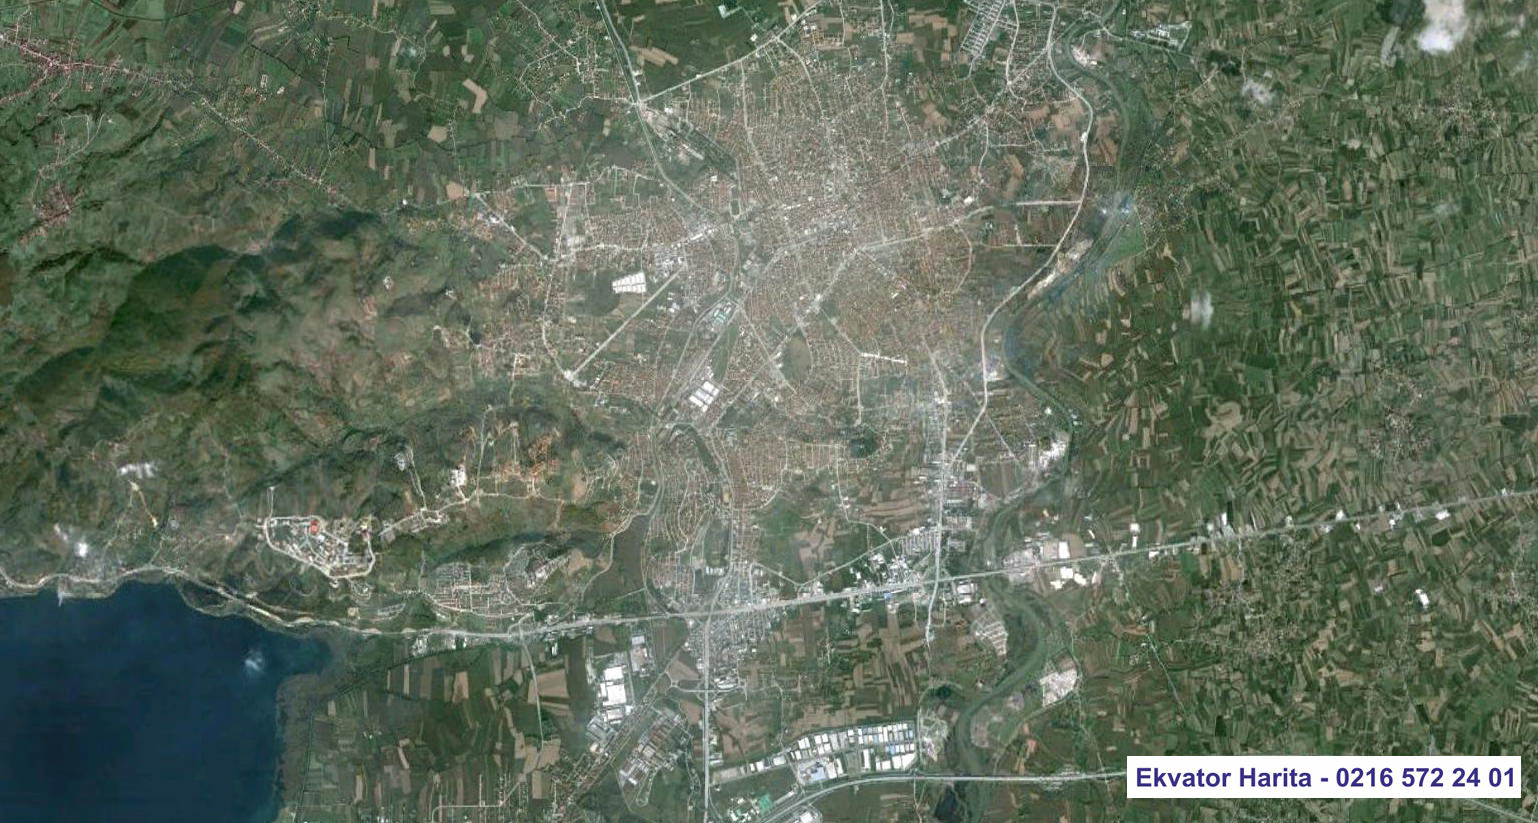 Adapazarı Uydu Haritası Örnek Fotoğrafı